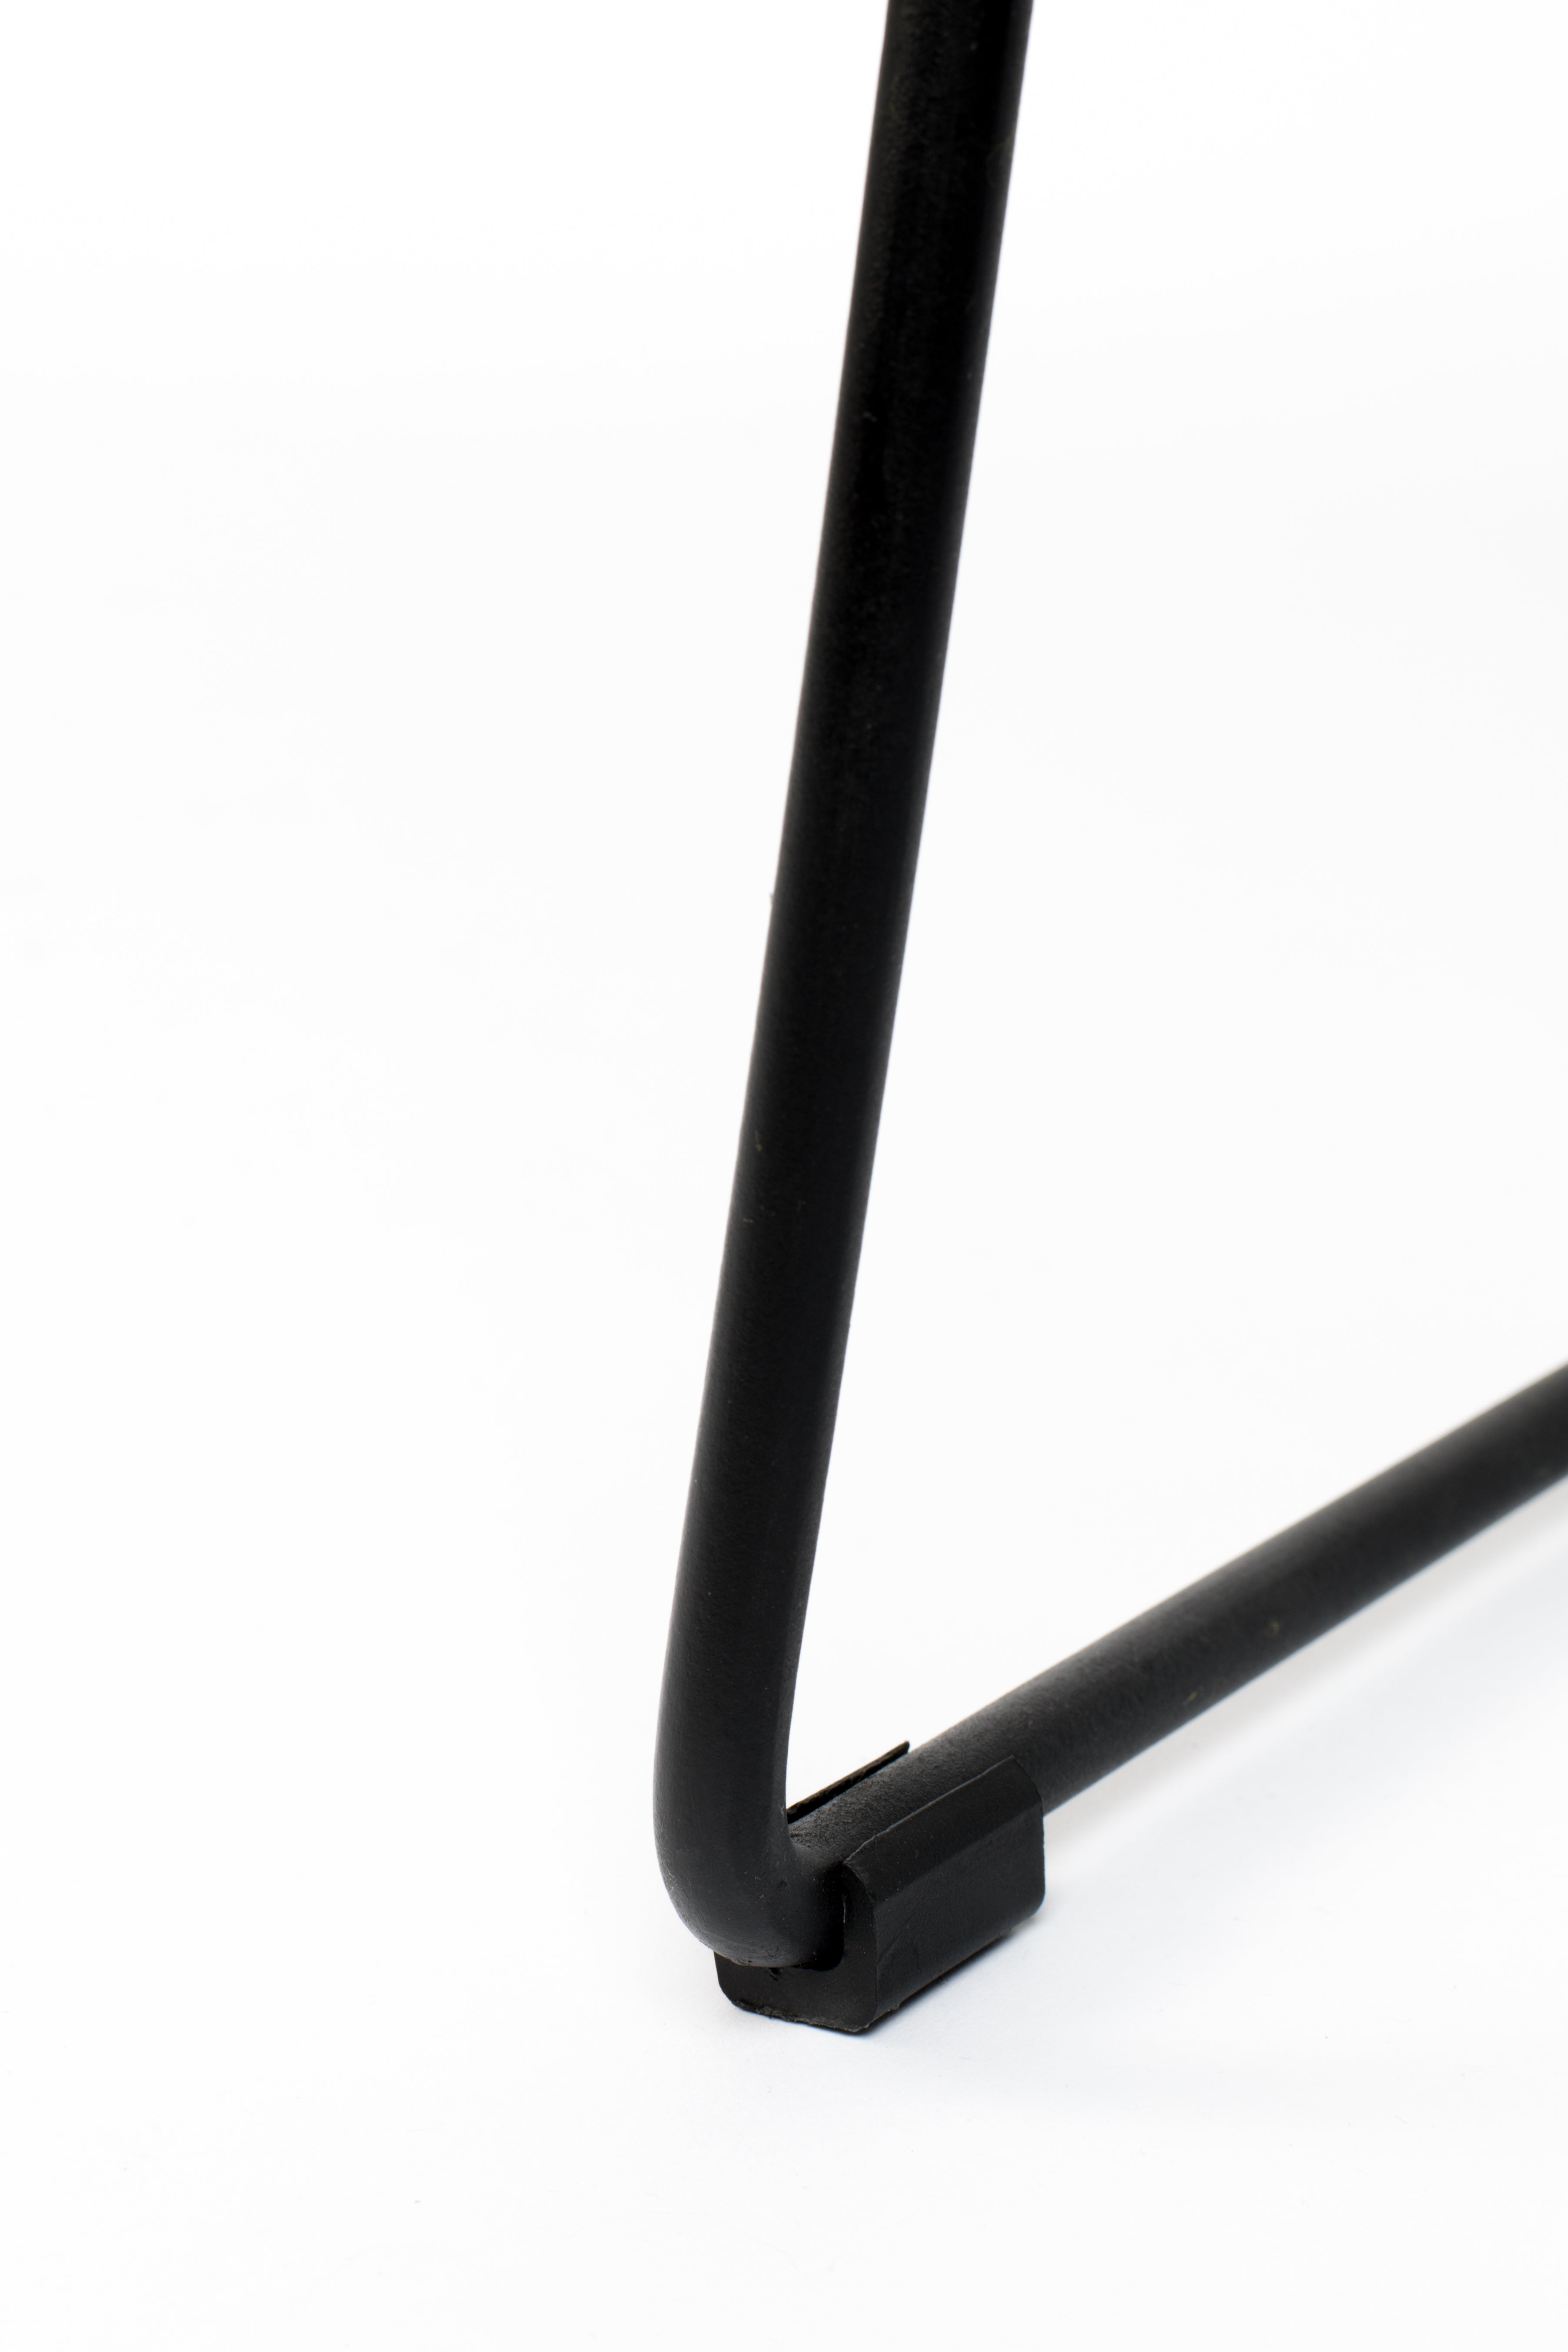 Barhocker Tangle in Schwarz präsentiert im Onlineshop von KAQTU Design AG. Barhocker ist von White Label Living